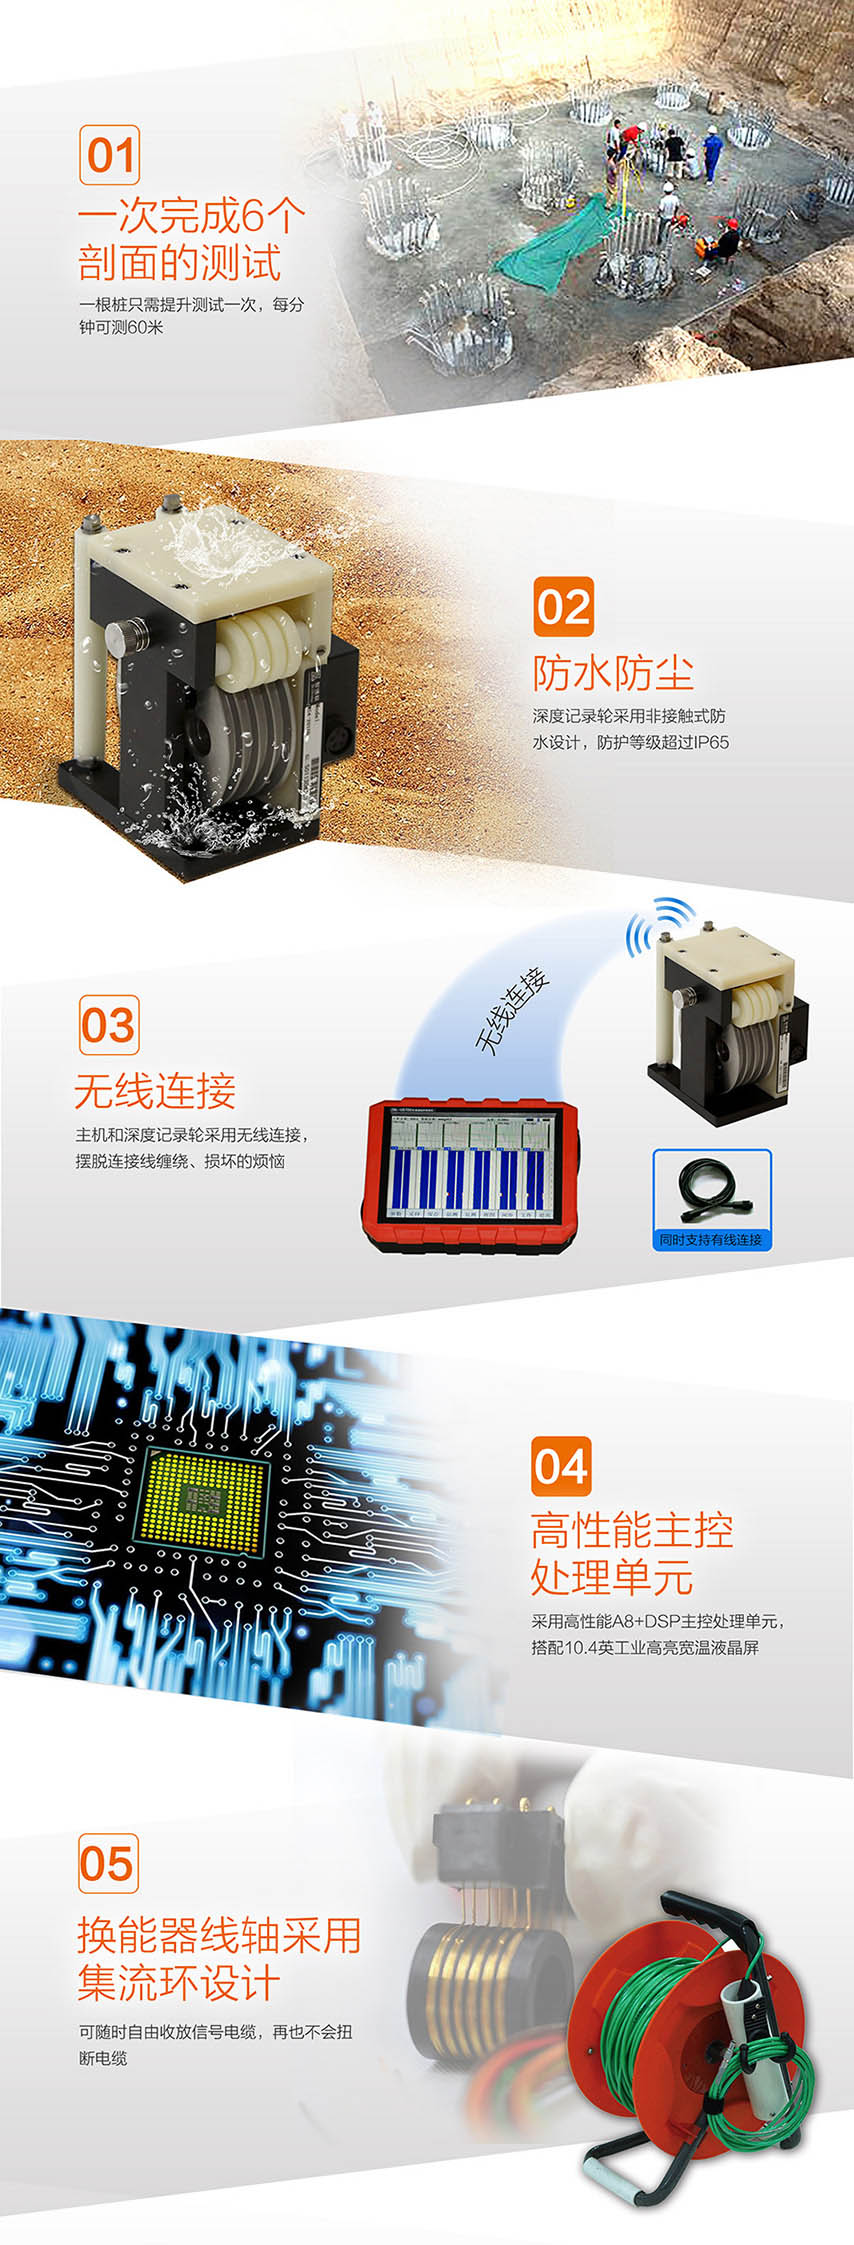 北京半岛bd体育ZBL-U5700多通道超声测桩仪2